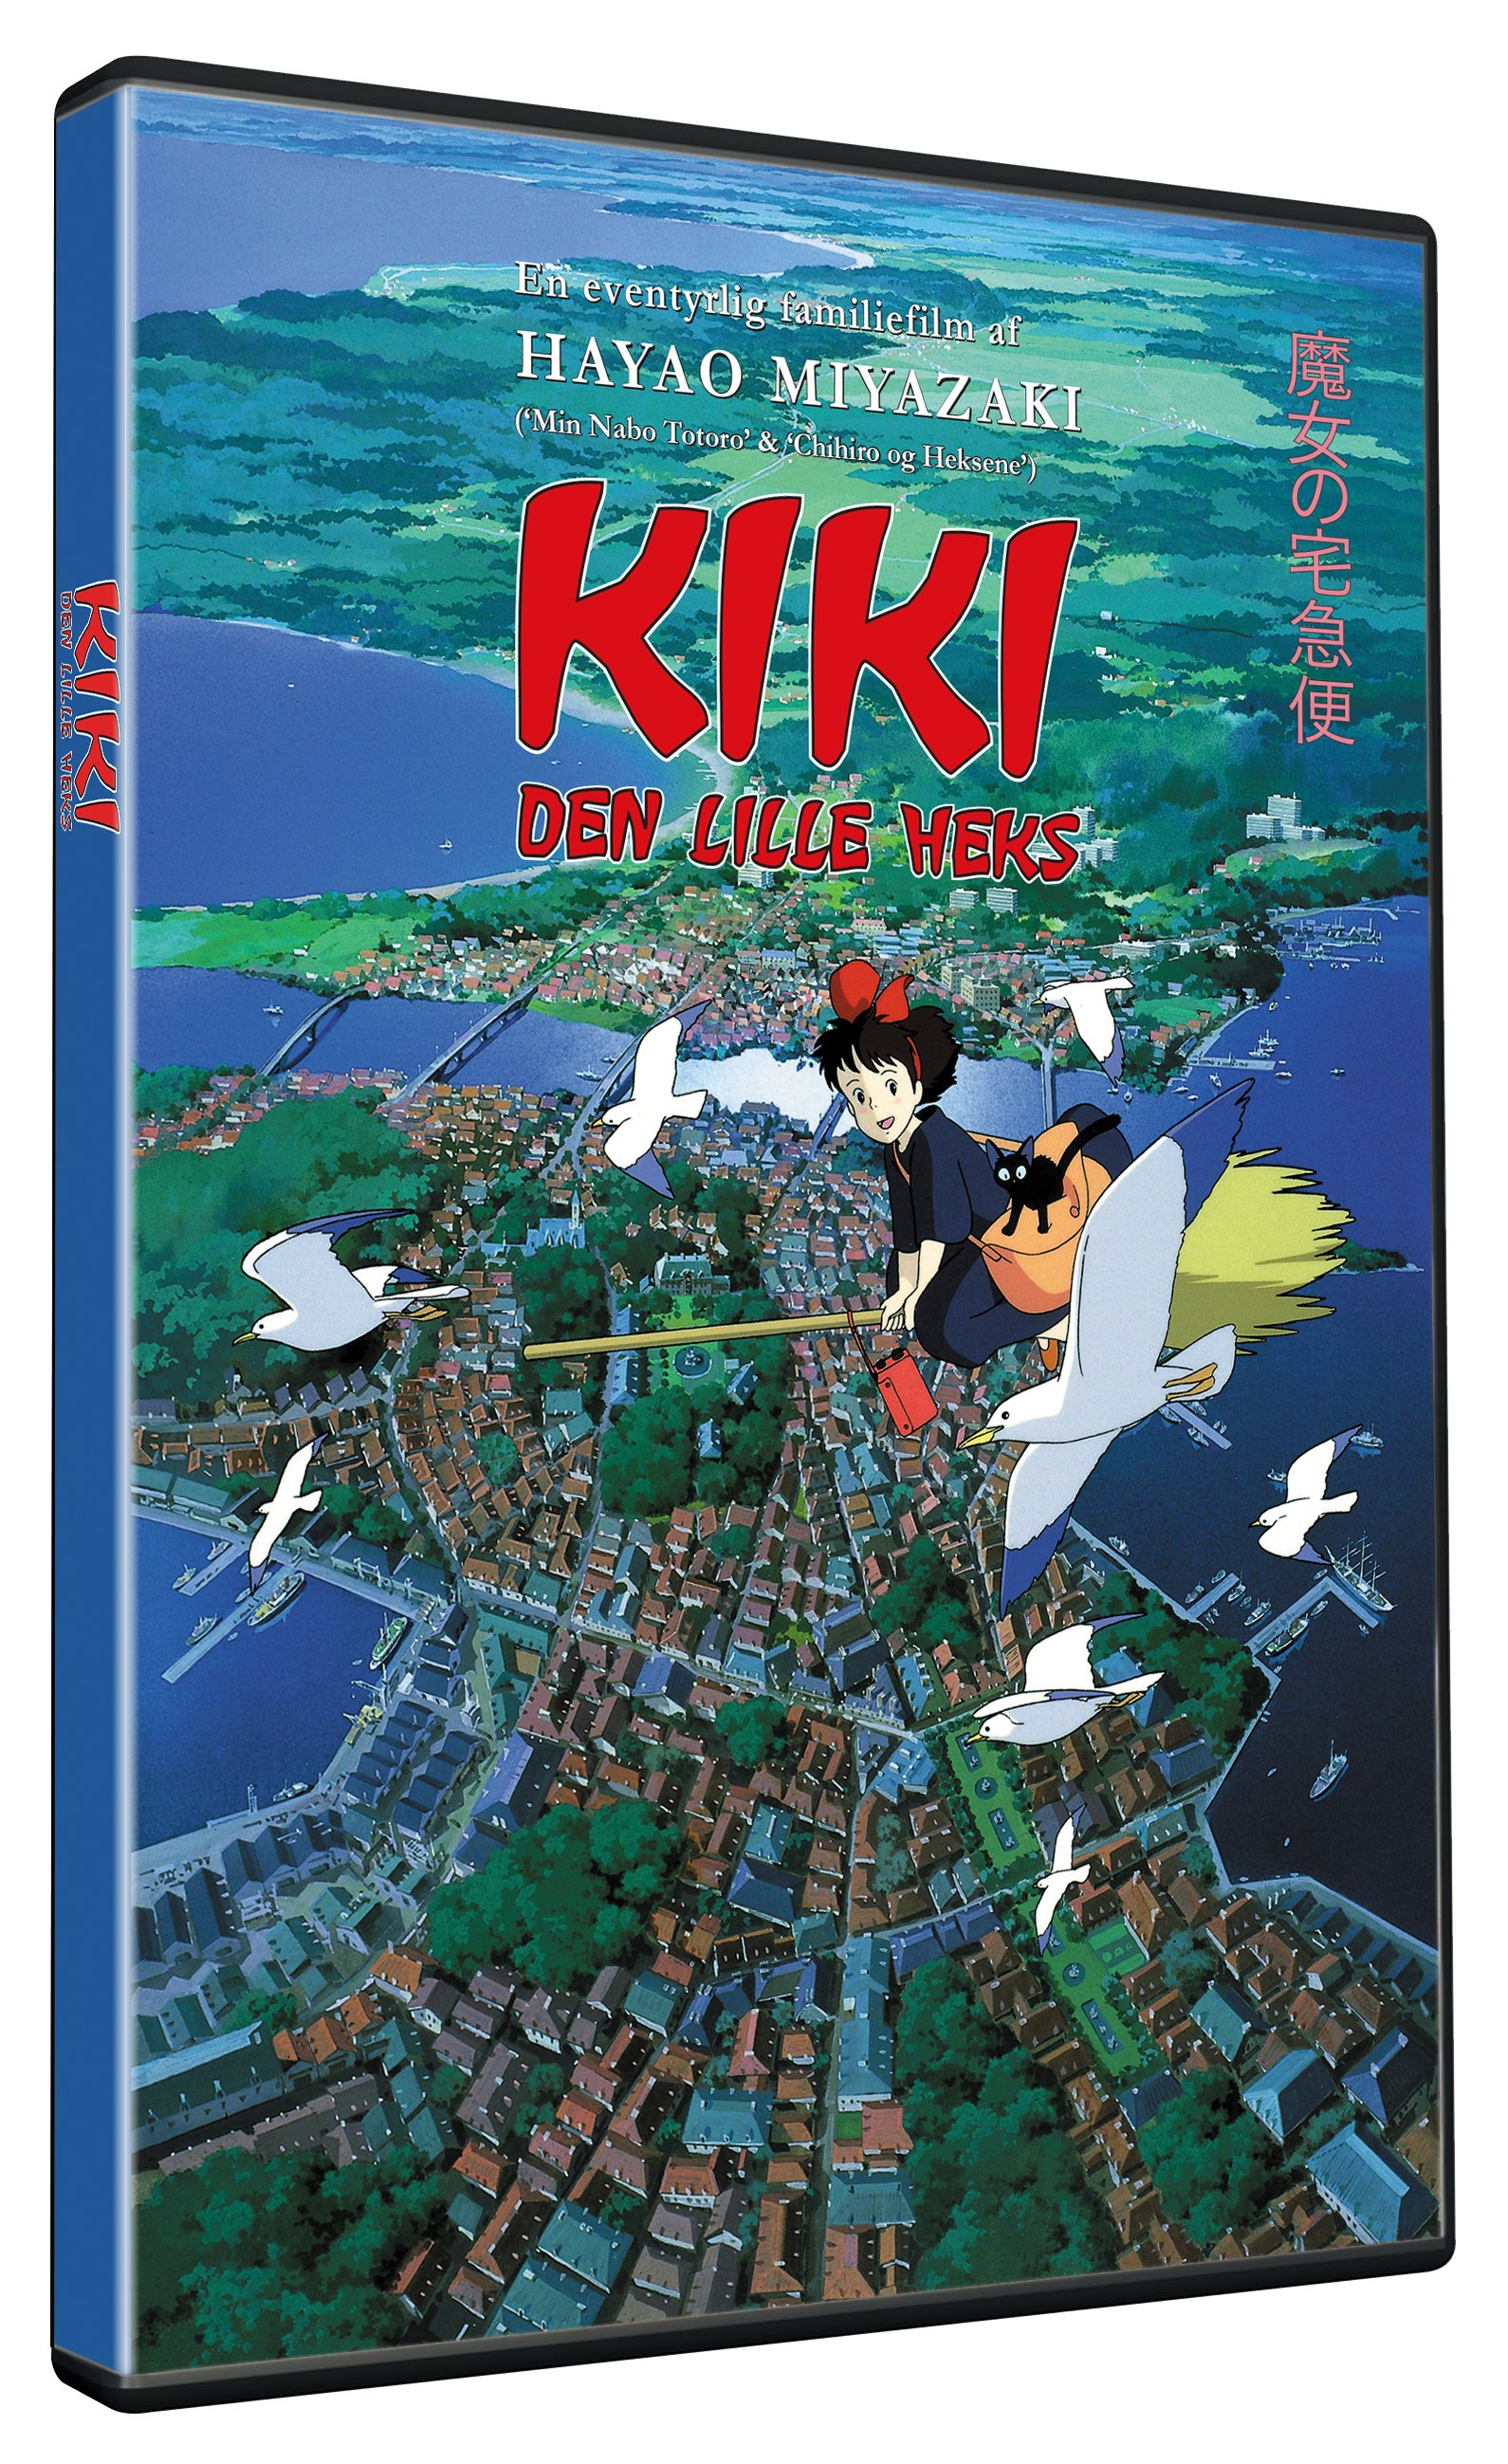 Kiki - den lille heks - DVD